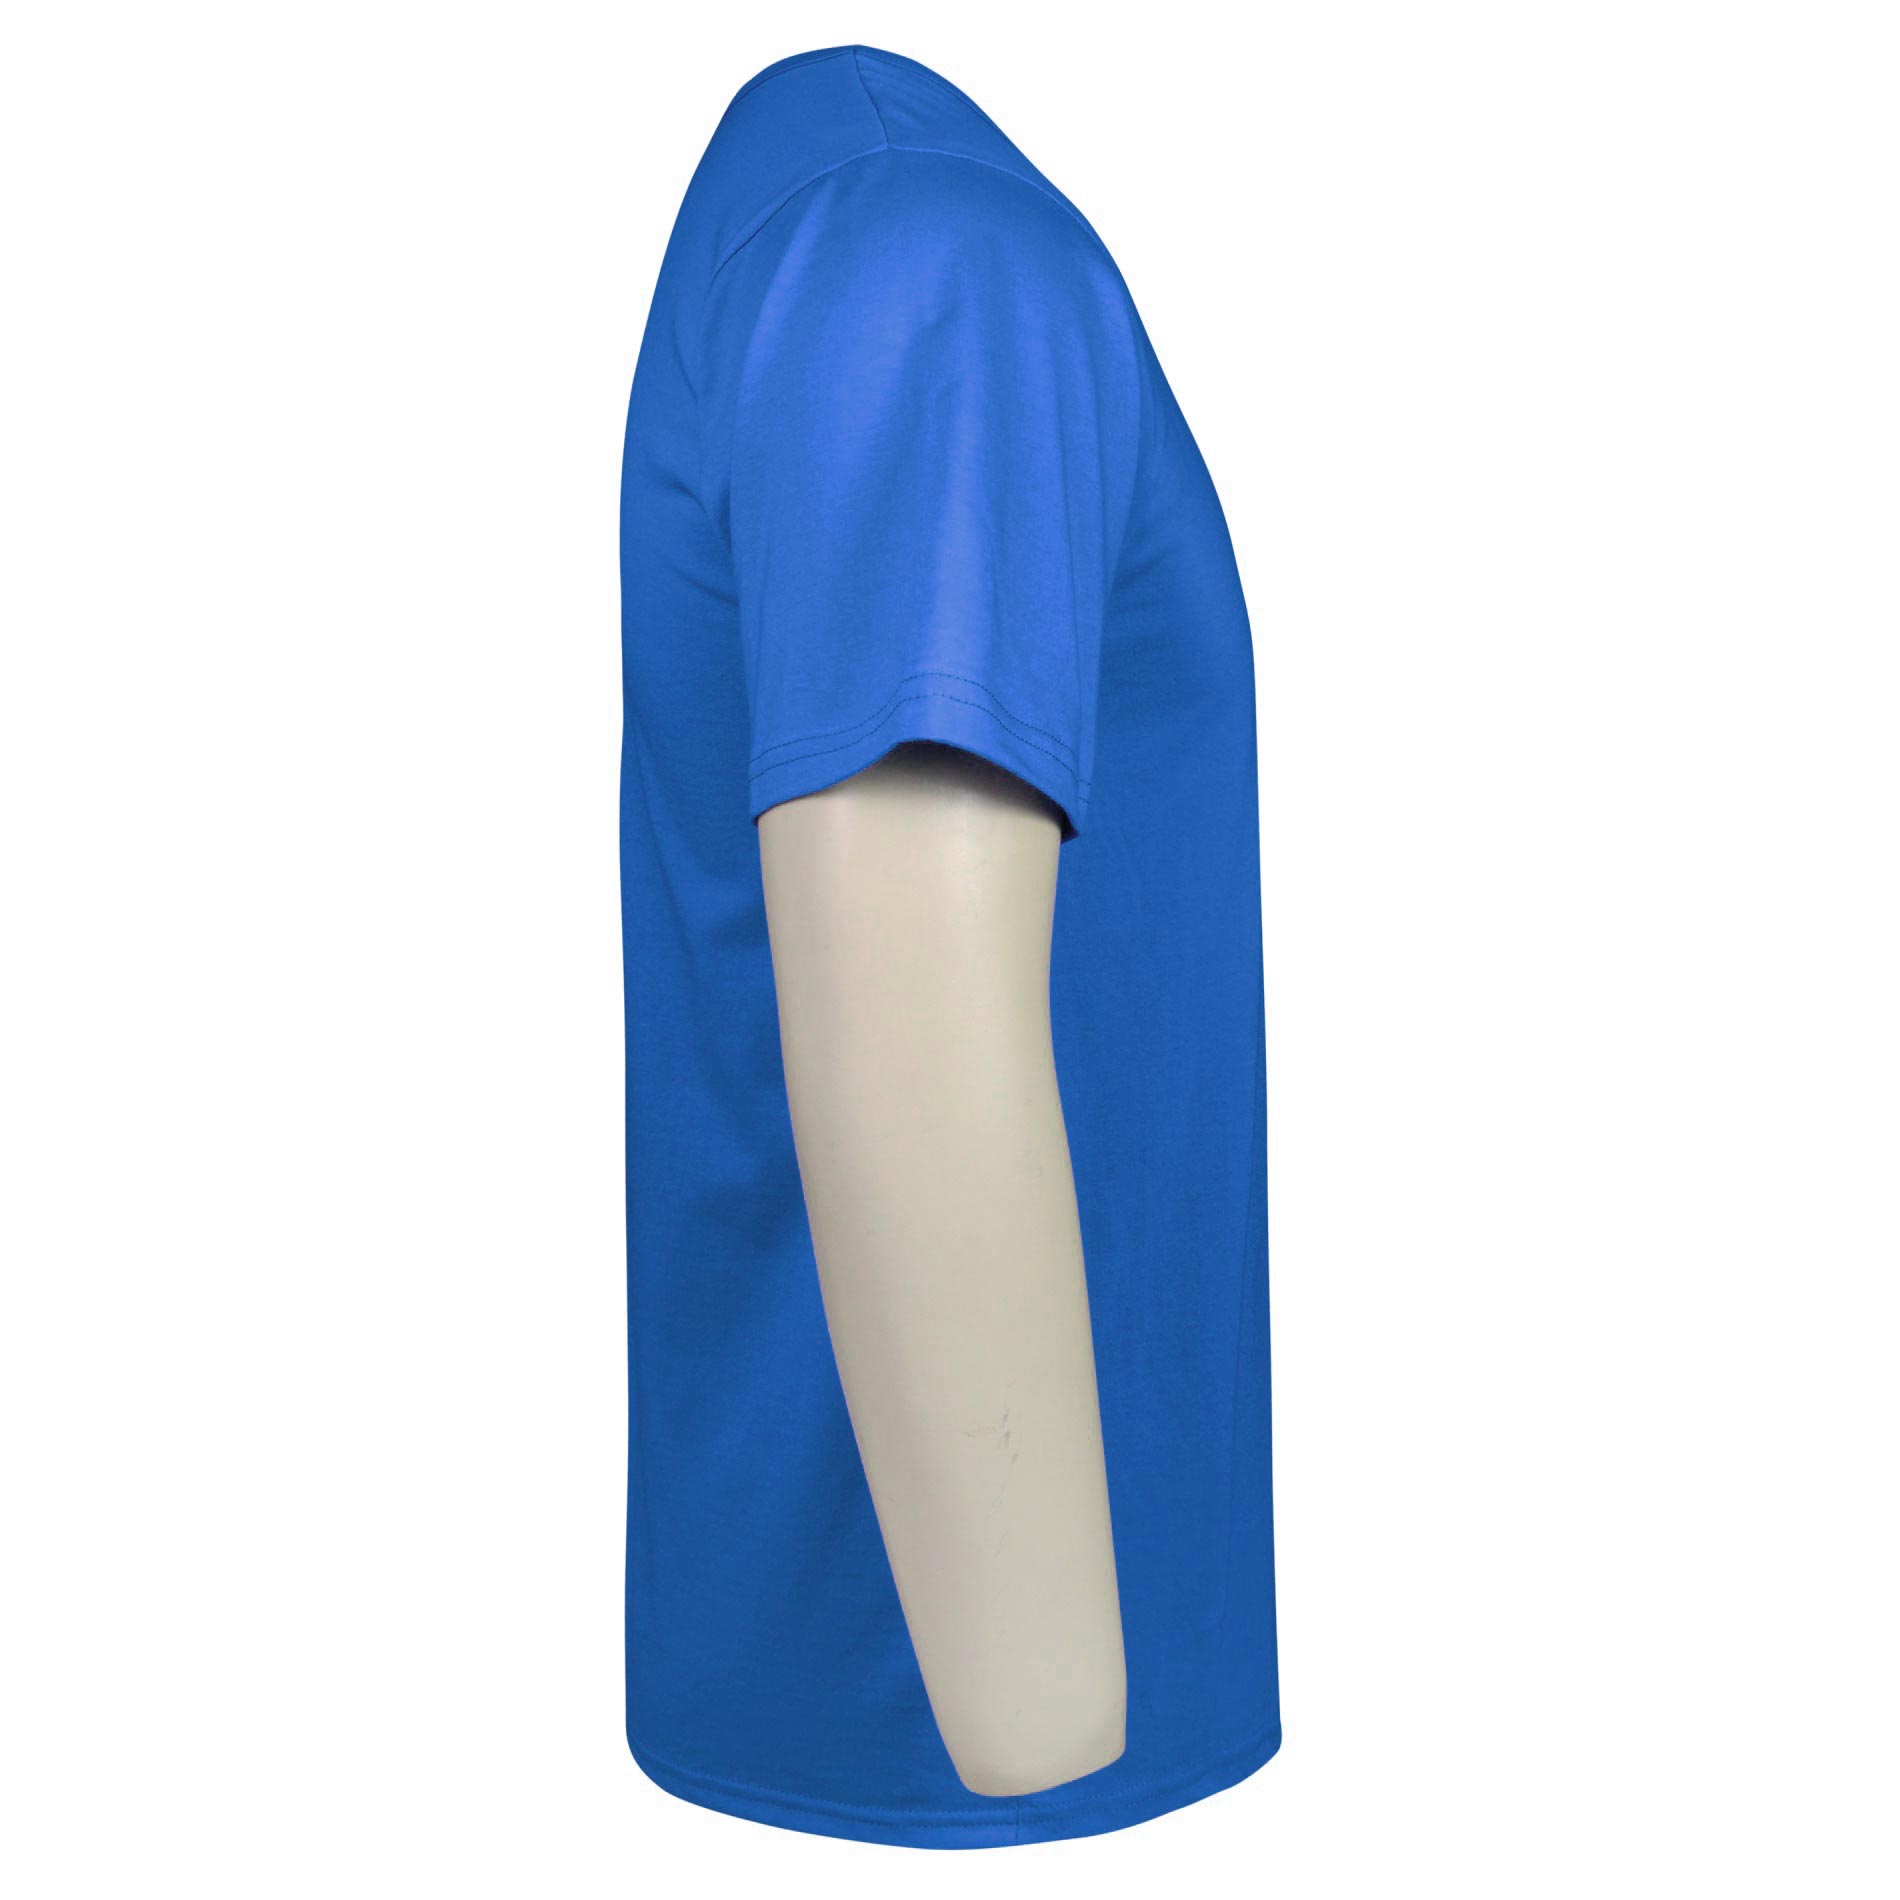 زیرپوش آستین دار مردانه ماییلدا مدل پنبه ای کد 4710 رنگ آبی -  - 3